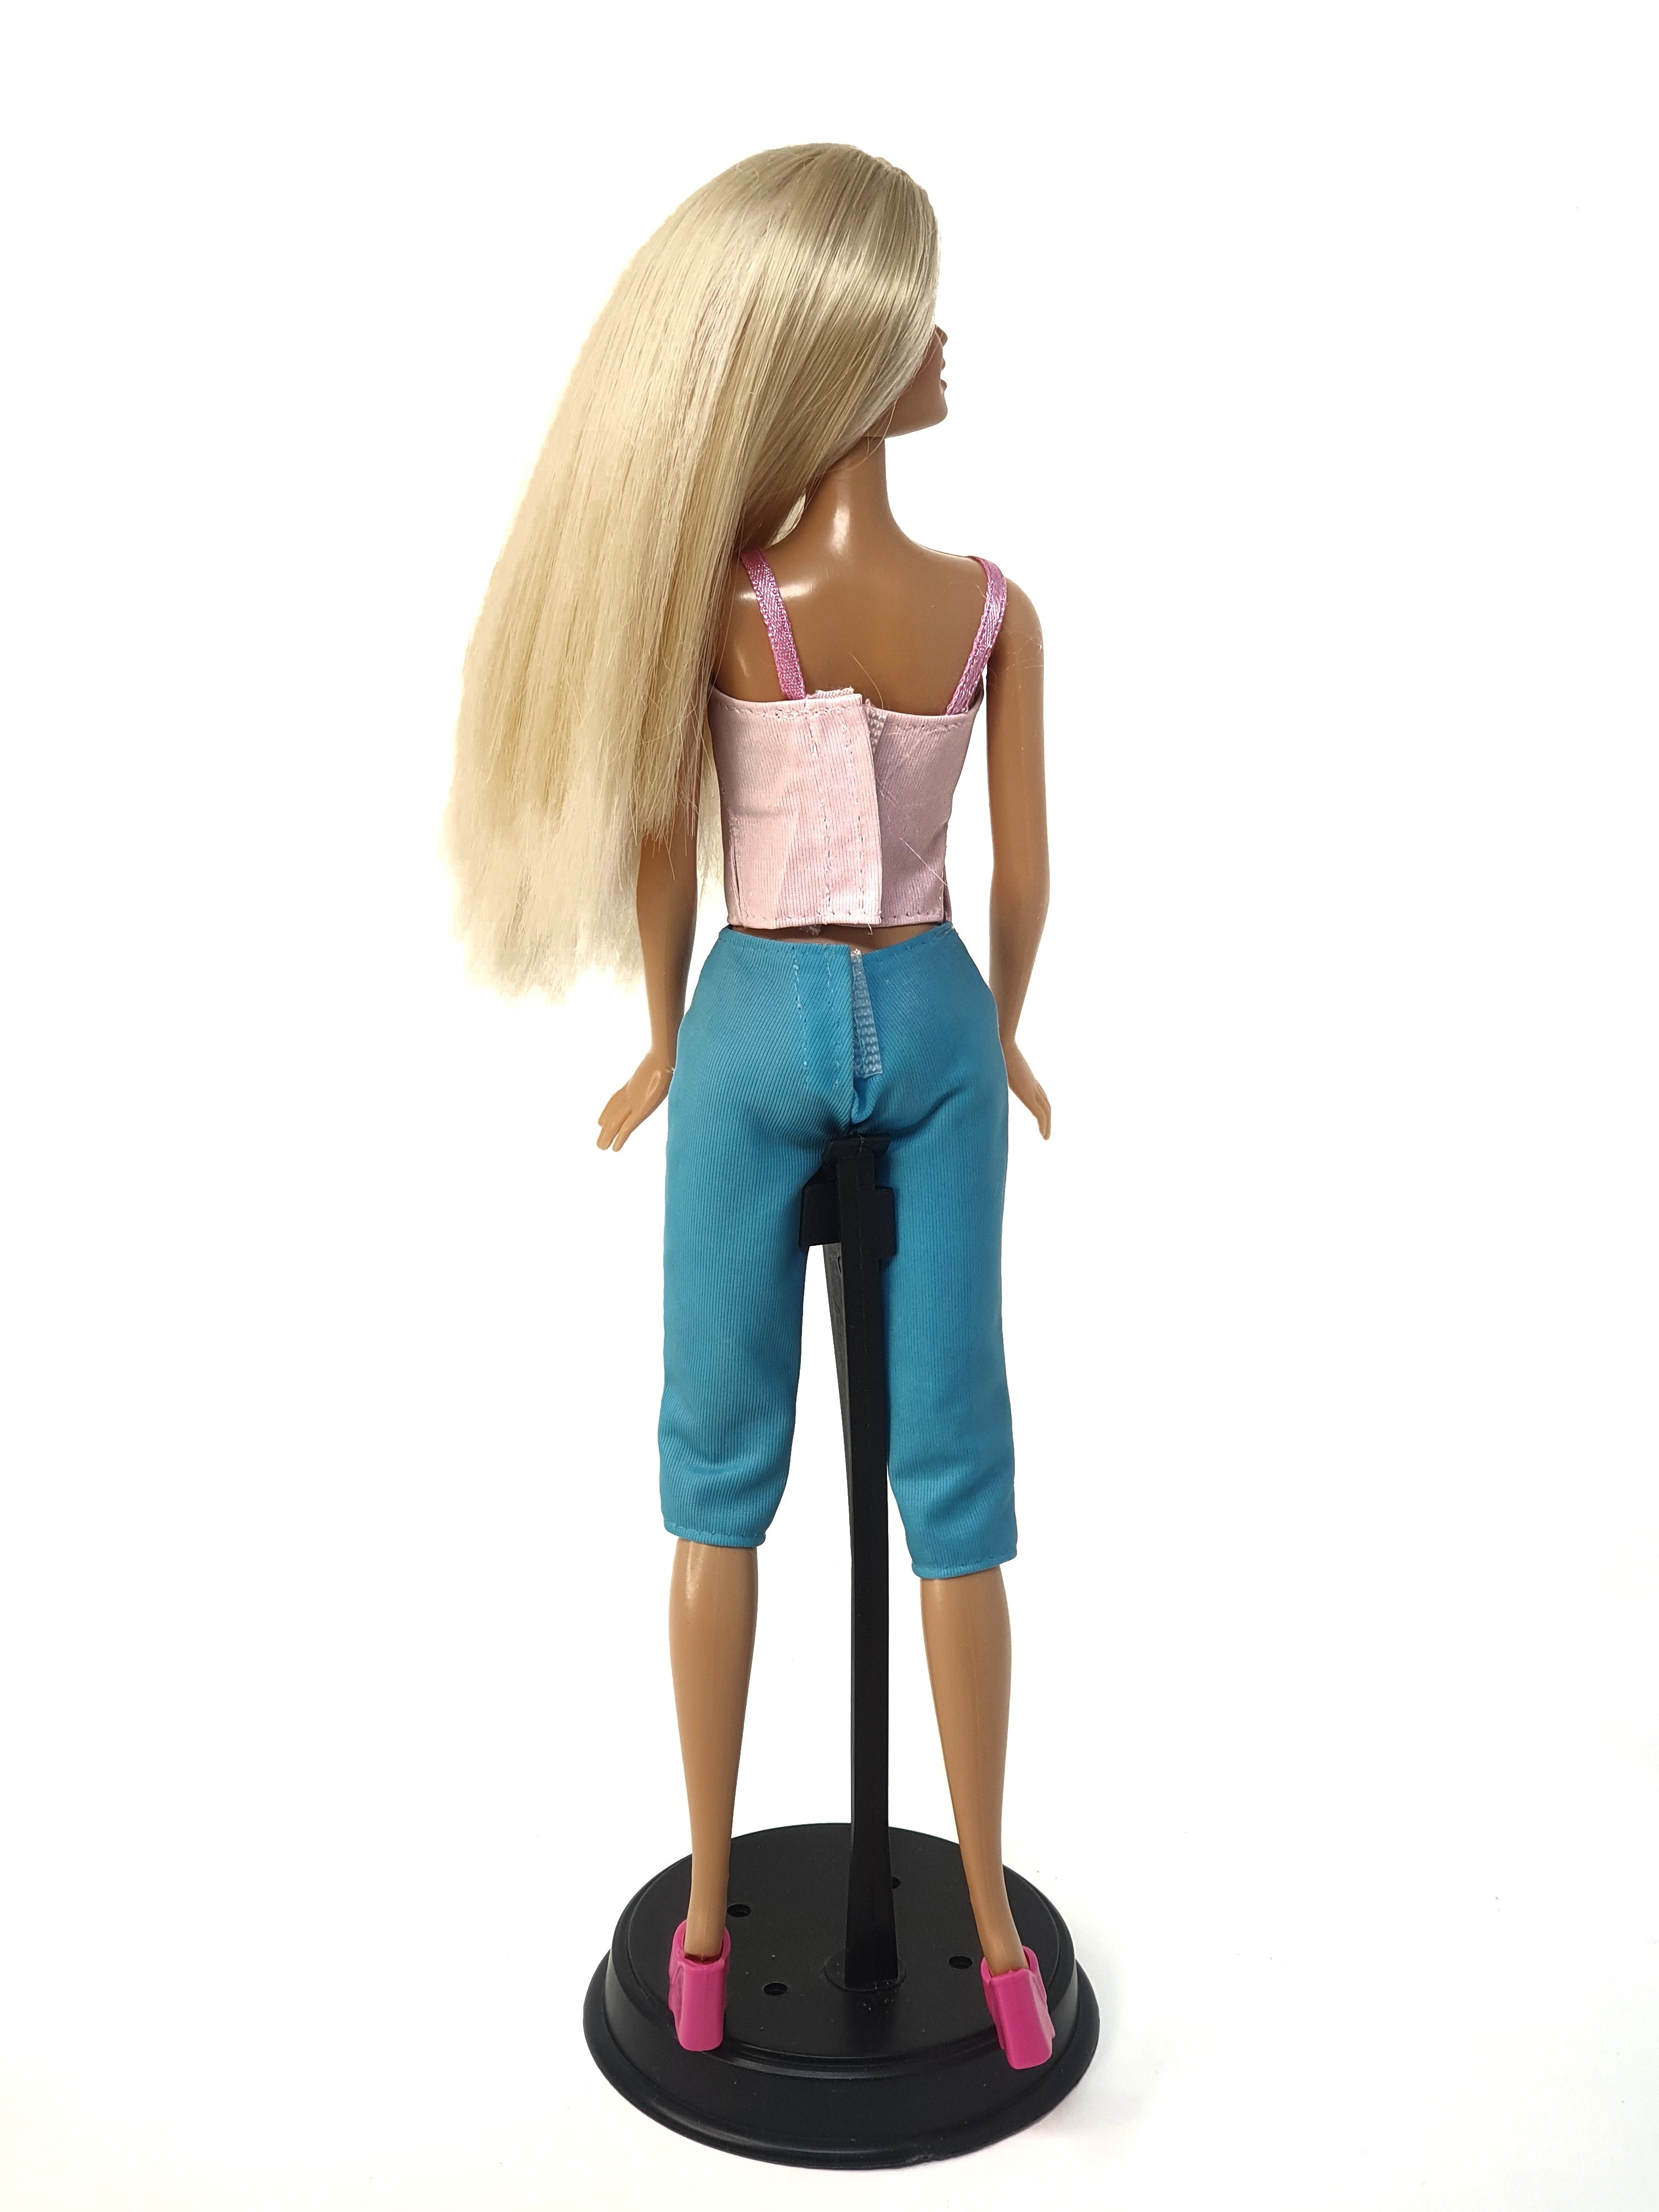 Barbie Wash n' wear, 2000 Mattel